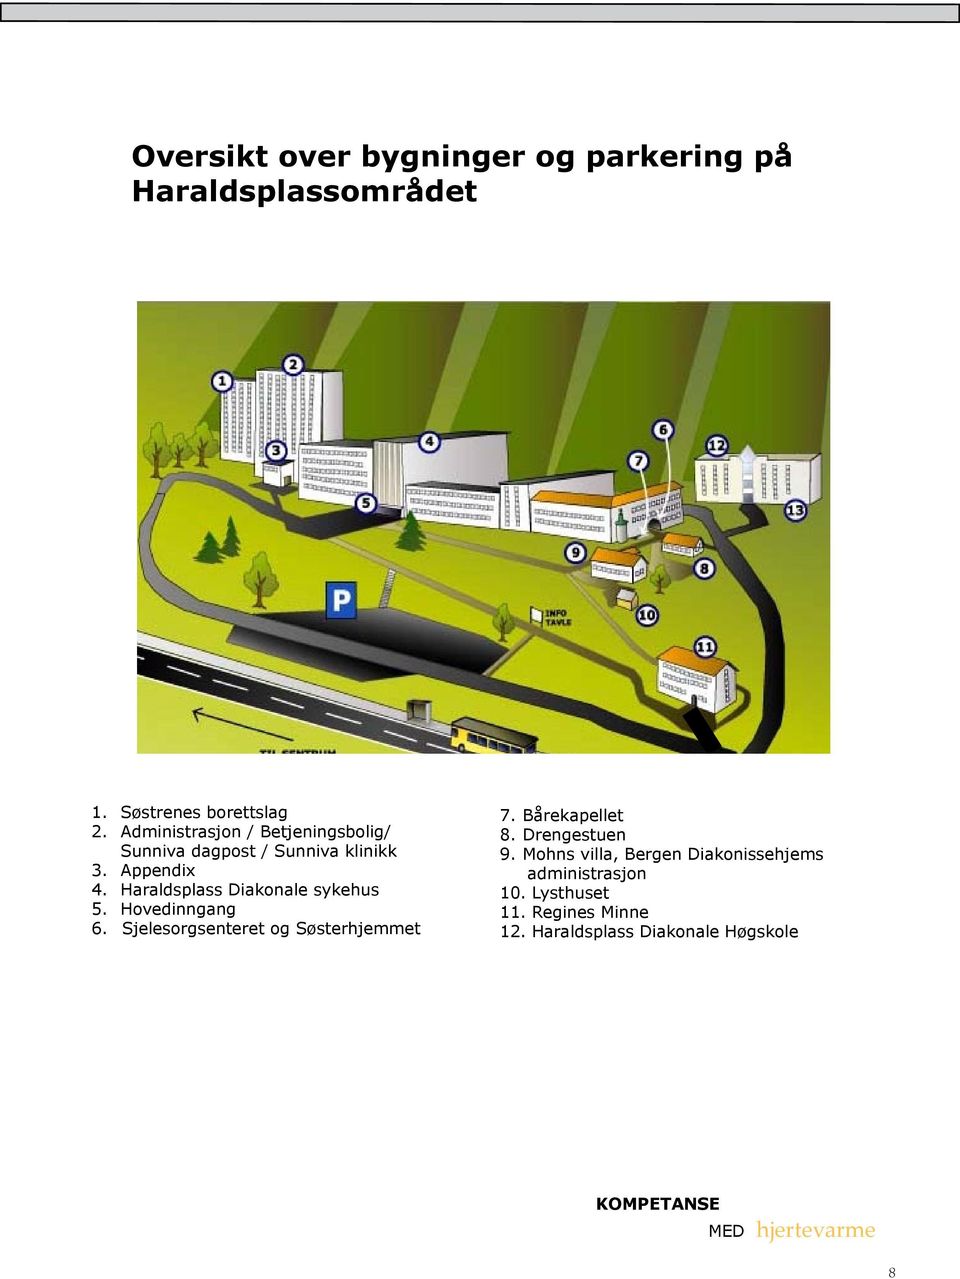 Haraldsplass Diakonale sykehus 5. Hovedinngang 6. Sjelesorgsenteret og Søsterhjemmet 7. Bårekapellet 8.